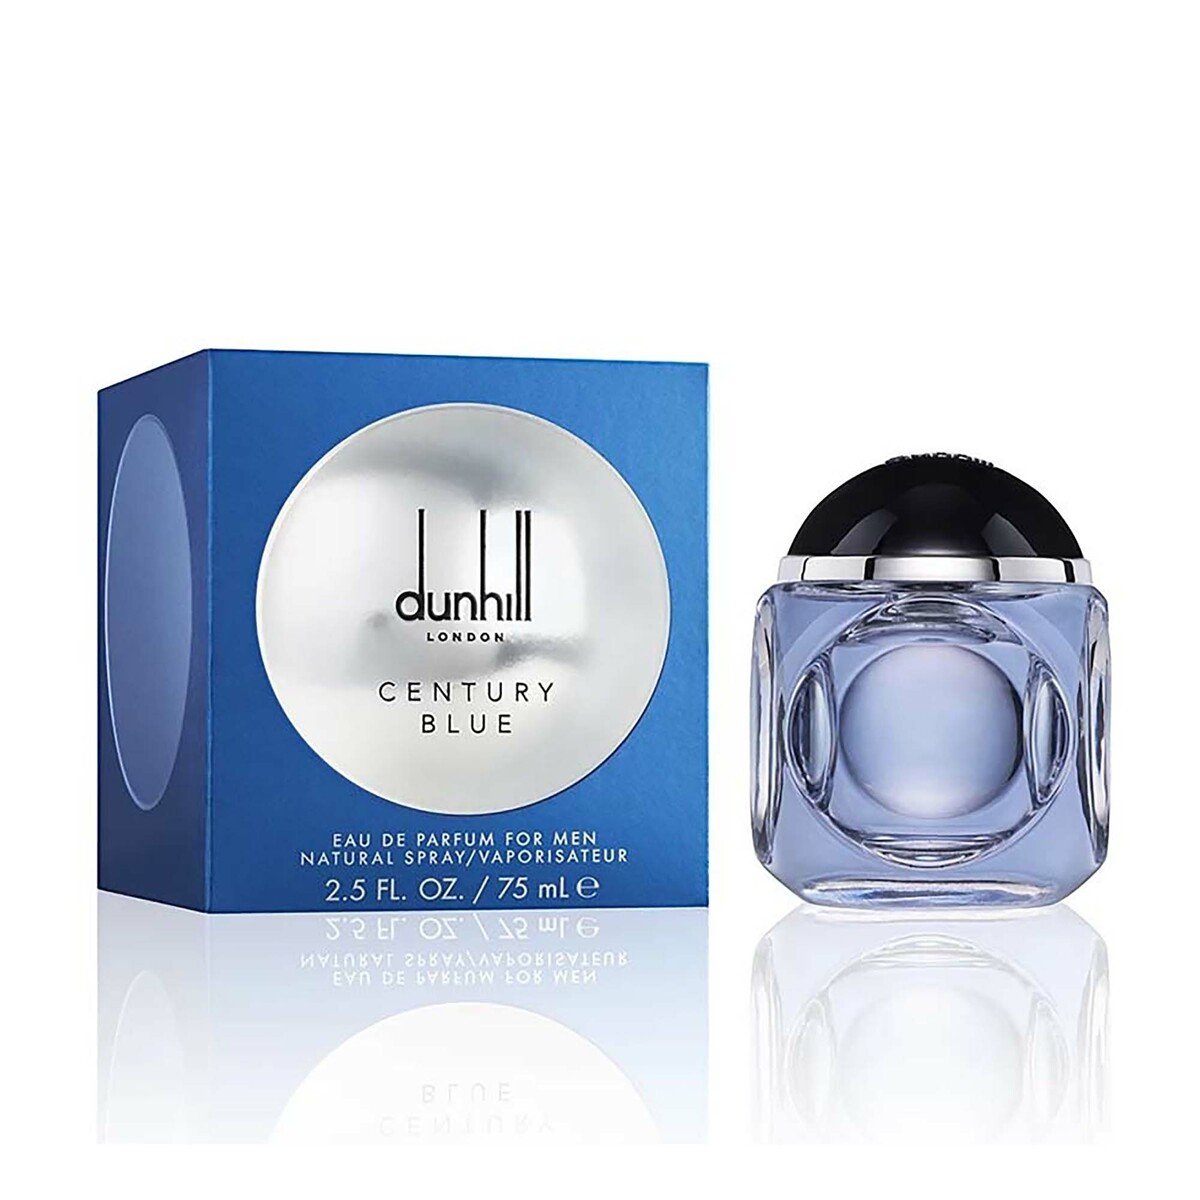 Dunhill Century Blue Eau De Parfum For Men 75ml Online at Best Price ...